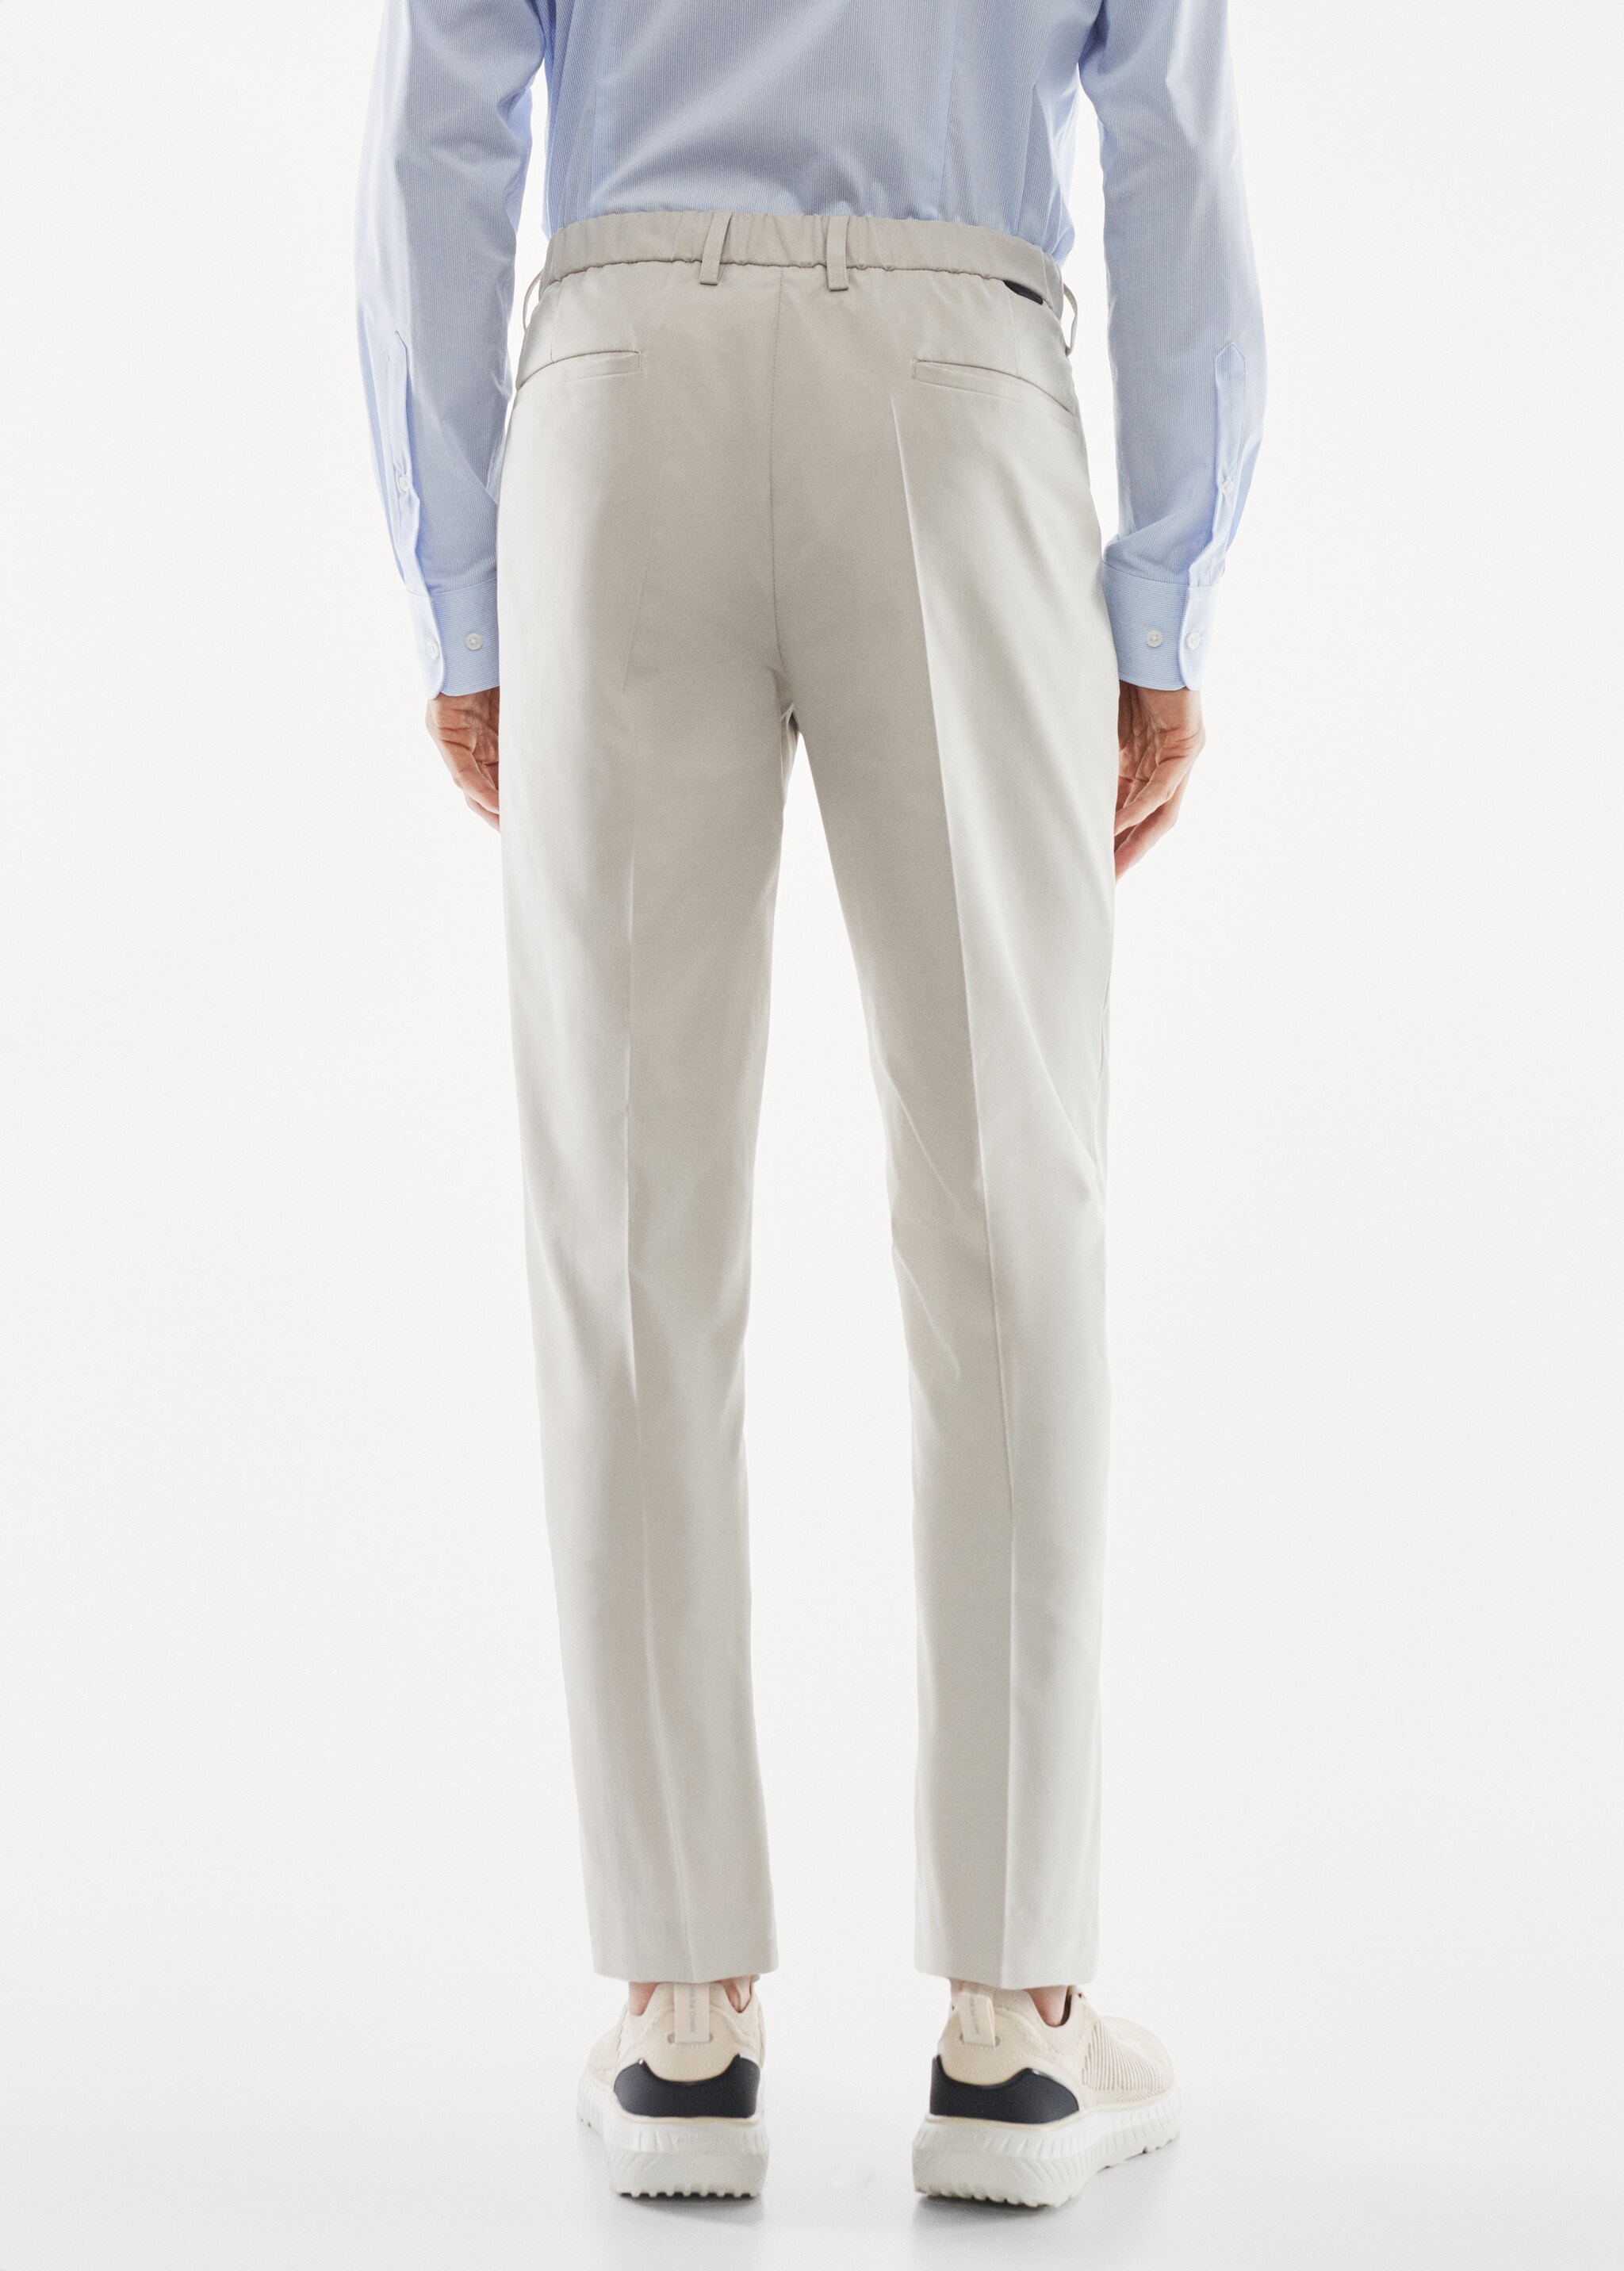 Pantalón traje slim fit tejido técnico - Reverso del artículo